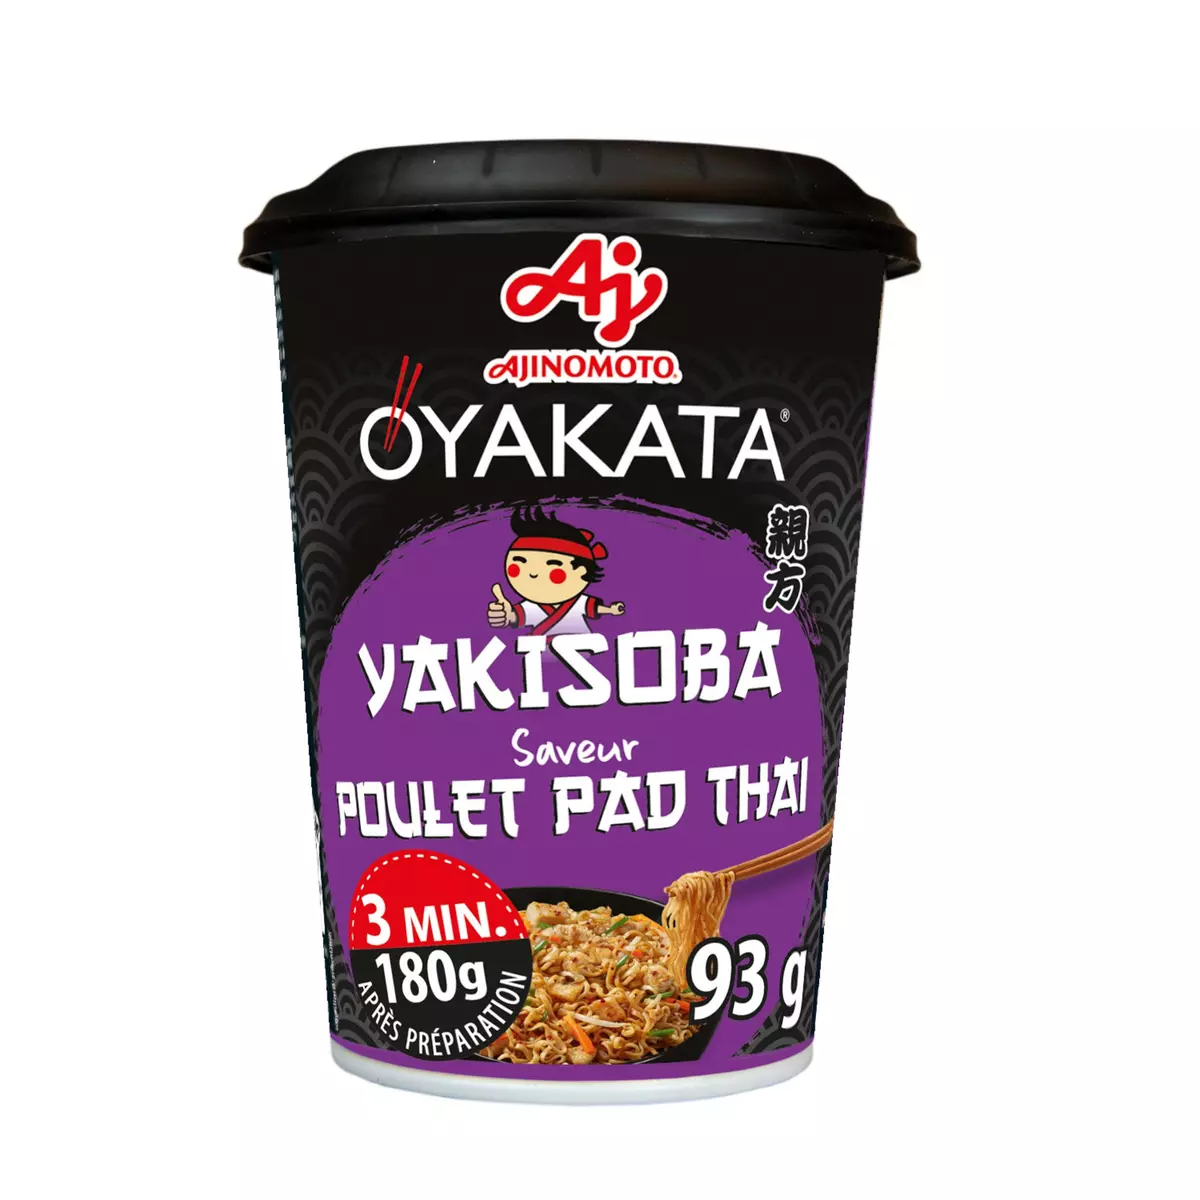 OYAKATA Cup nouilles de blé sautées saveur poulet Pad Thaï 1 personne 93g